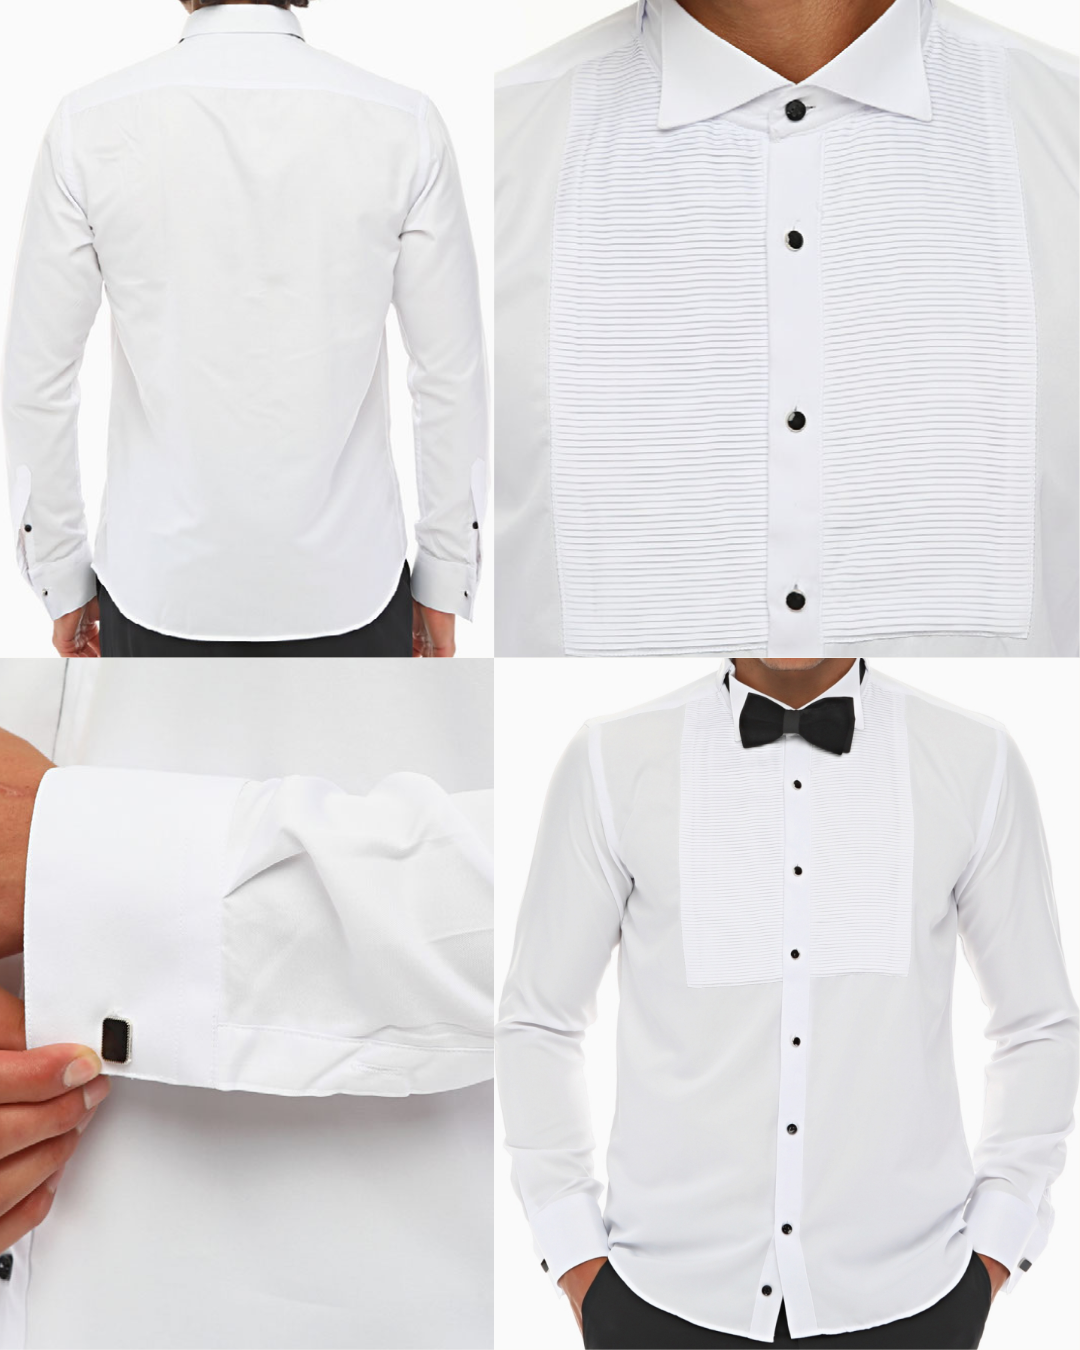 ICONIC HORIZONTAL PLEATED - White Tuxedo Shirt With Studs